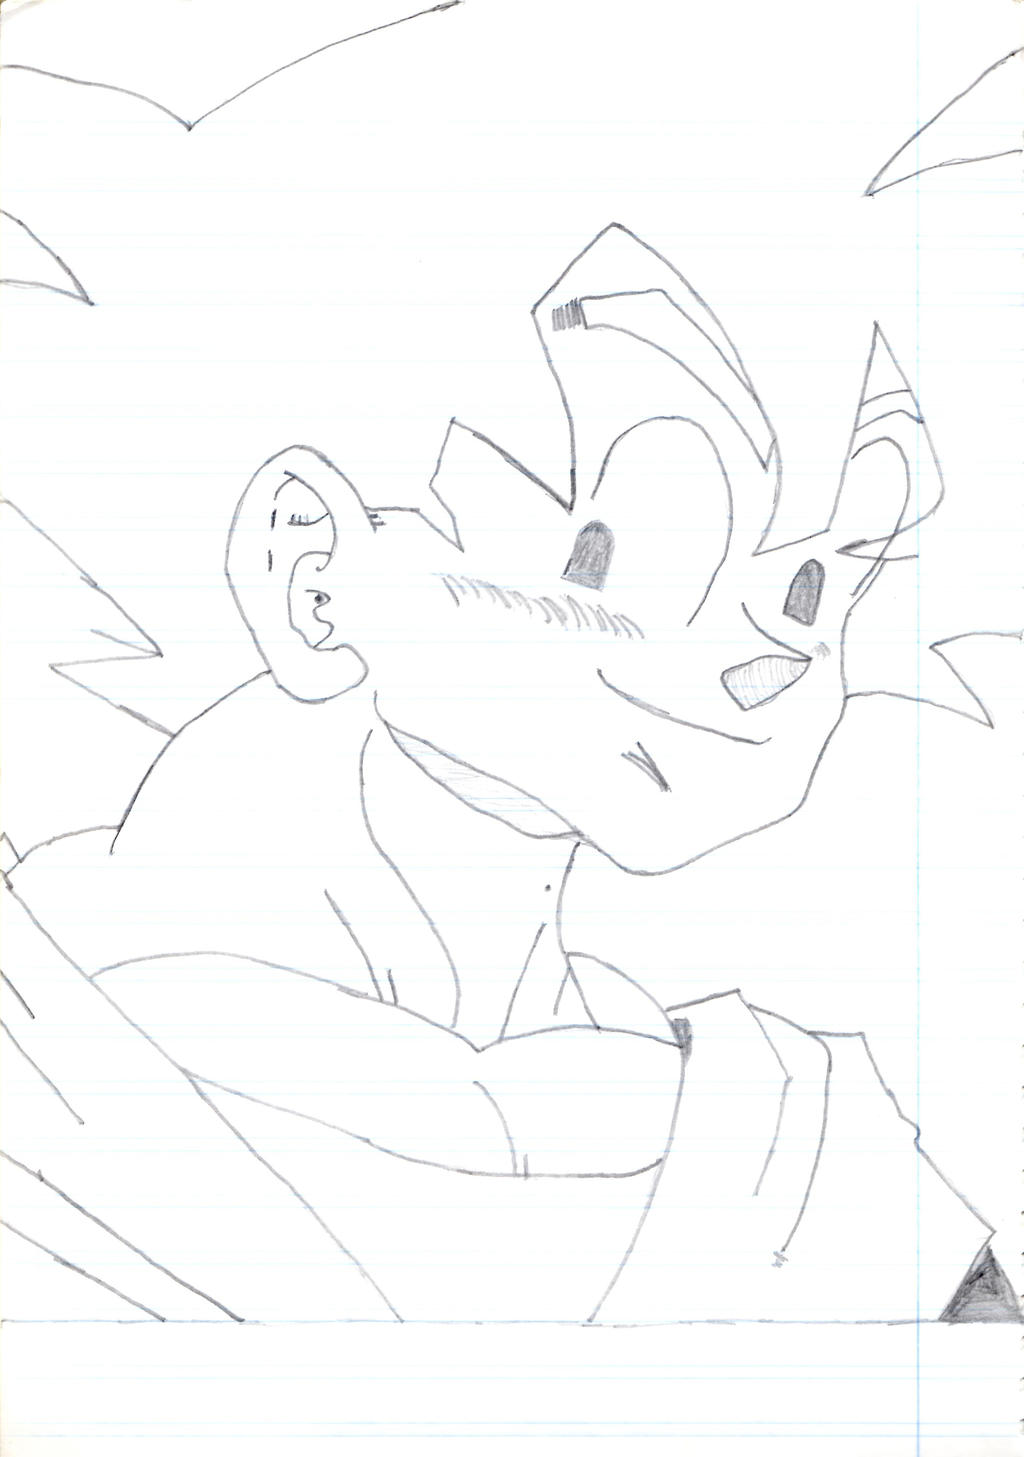 Son Goku sketch portrait 1996